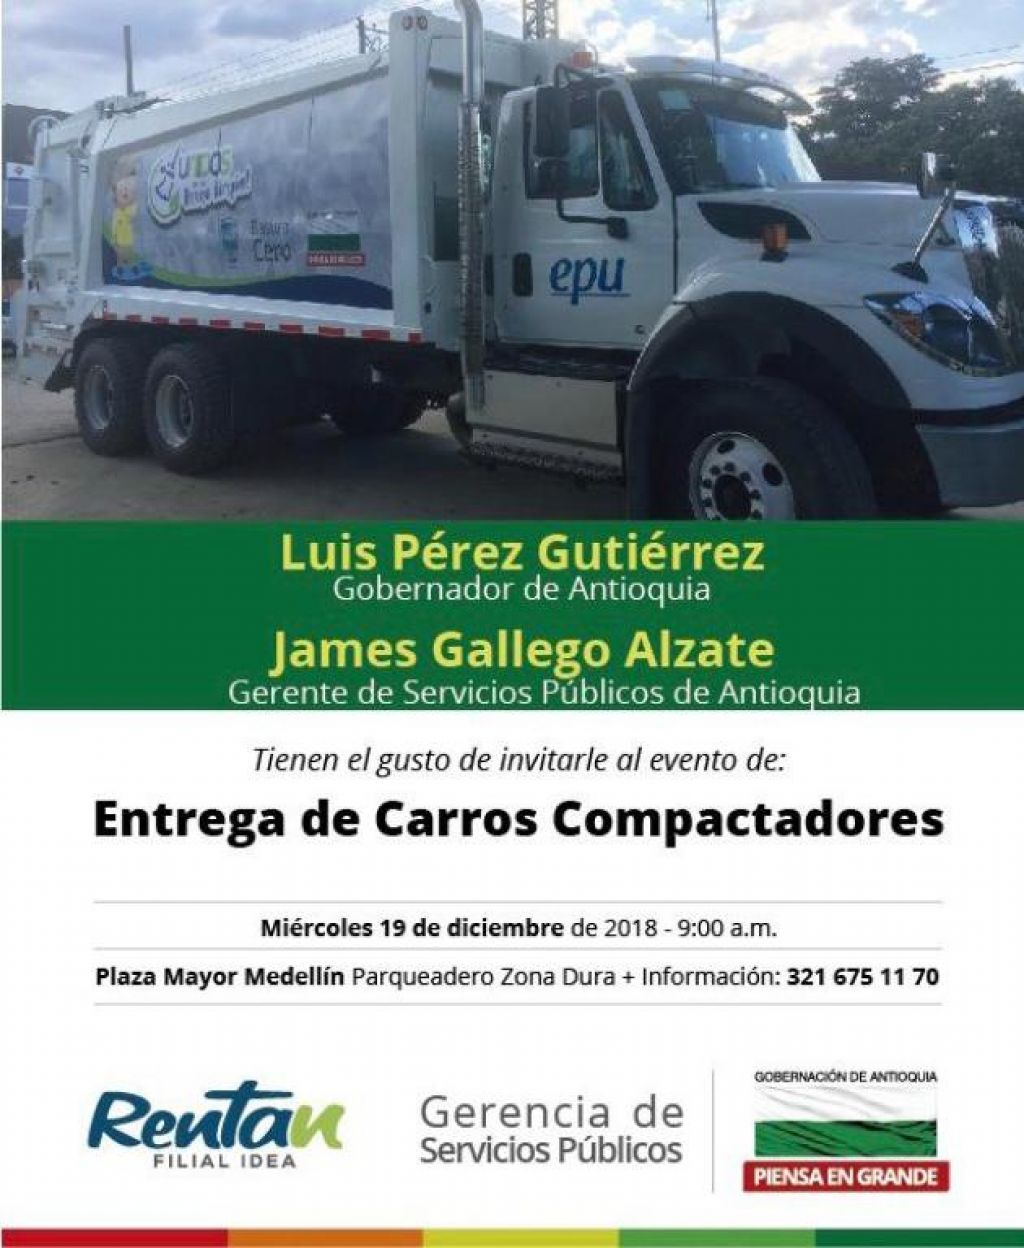 27 municipios de Antioquia recibirán del Gobernador Luis Pérez Gutiérrez vehículos recolectores de basuras